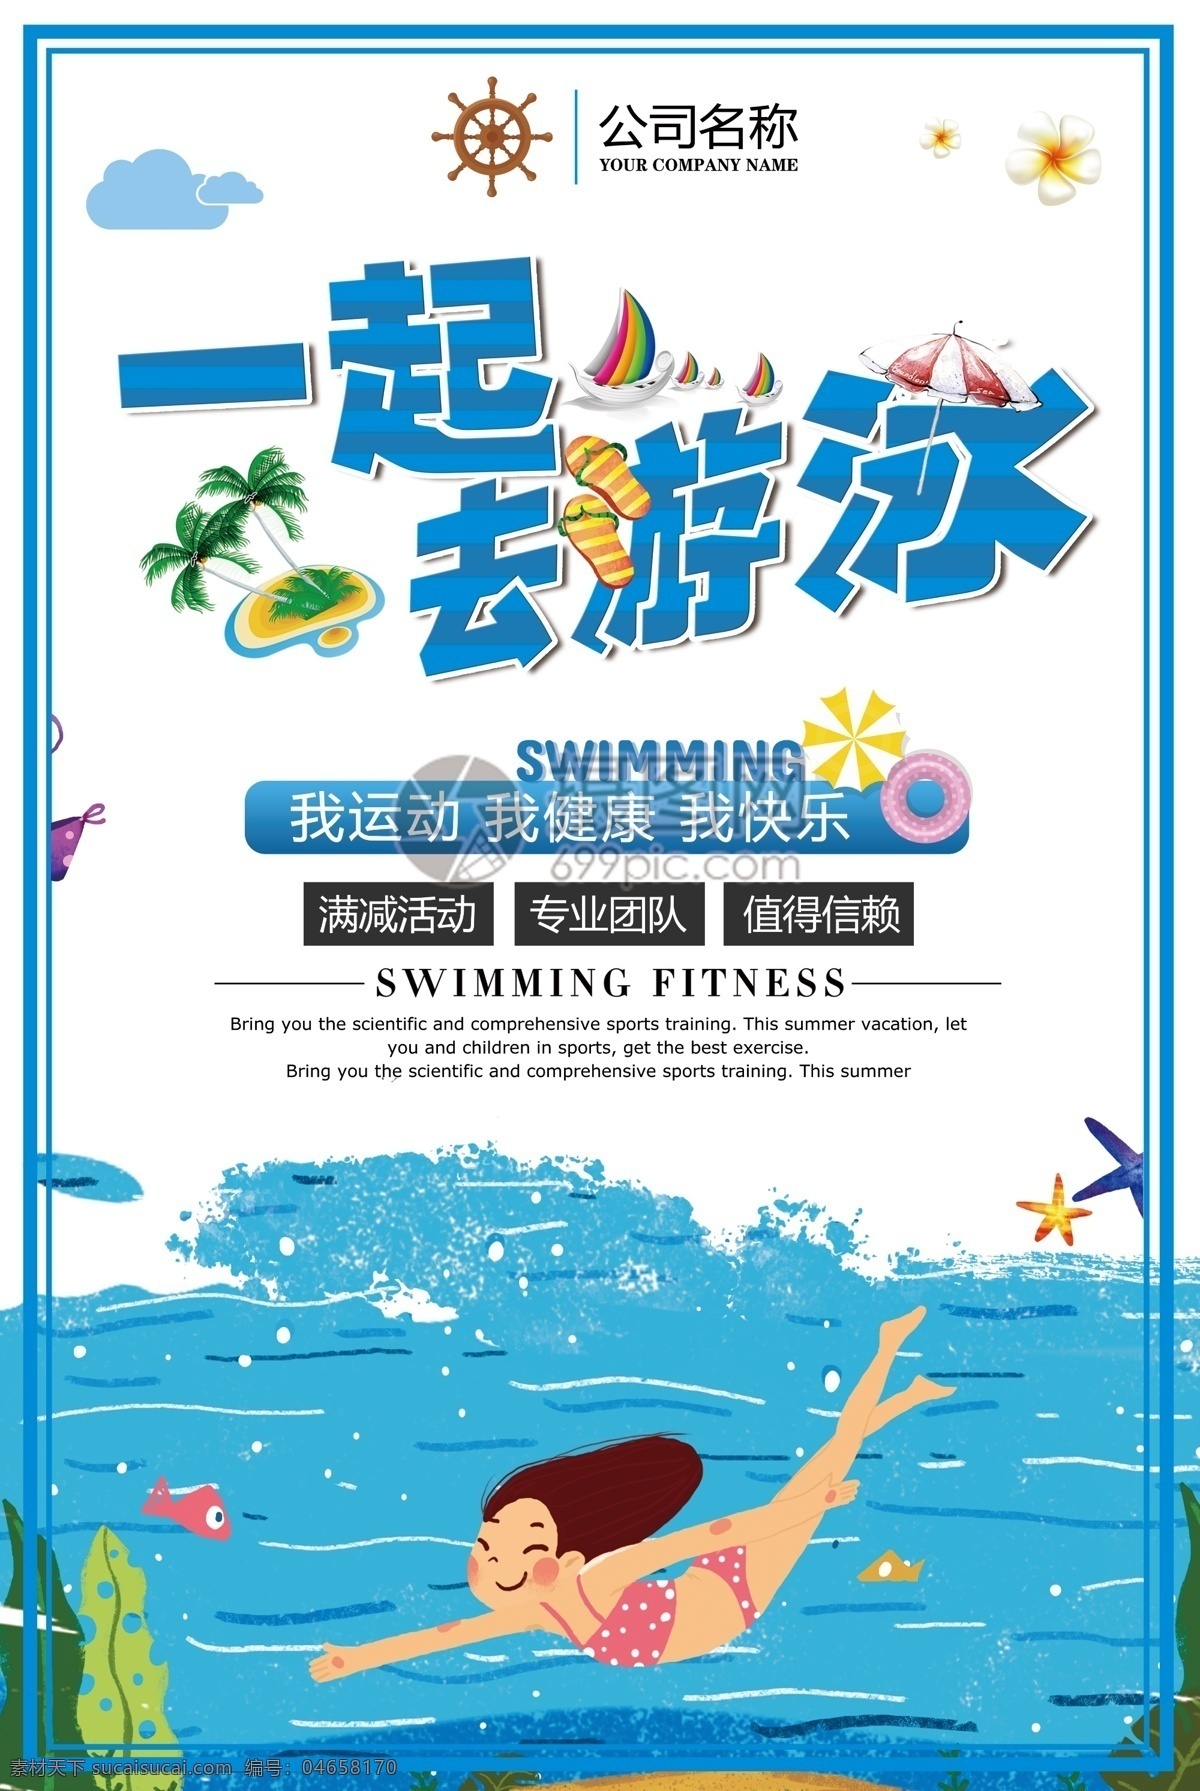 游泳宣传海报 游泳 游泳海报 游泳招生 游泳馆 游泳宣传广告 游泳宣传 游泳池 游泳培训班